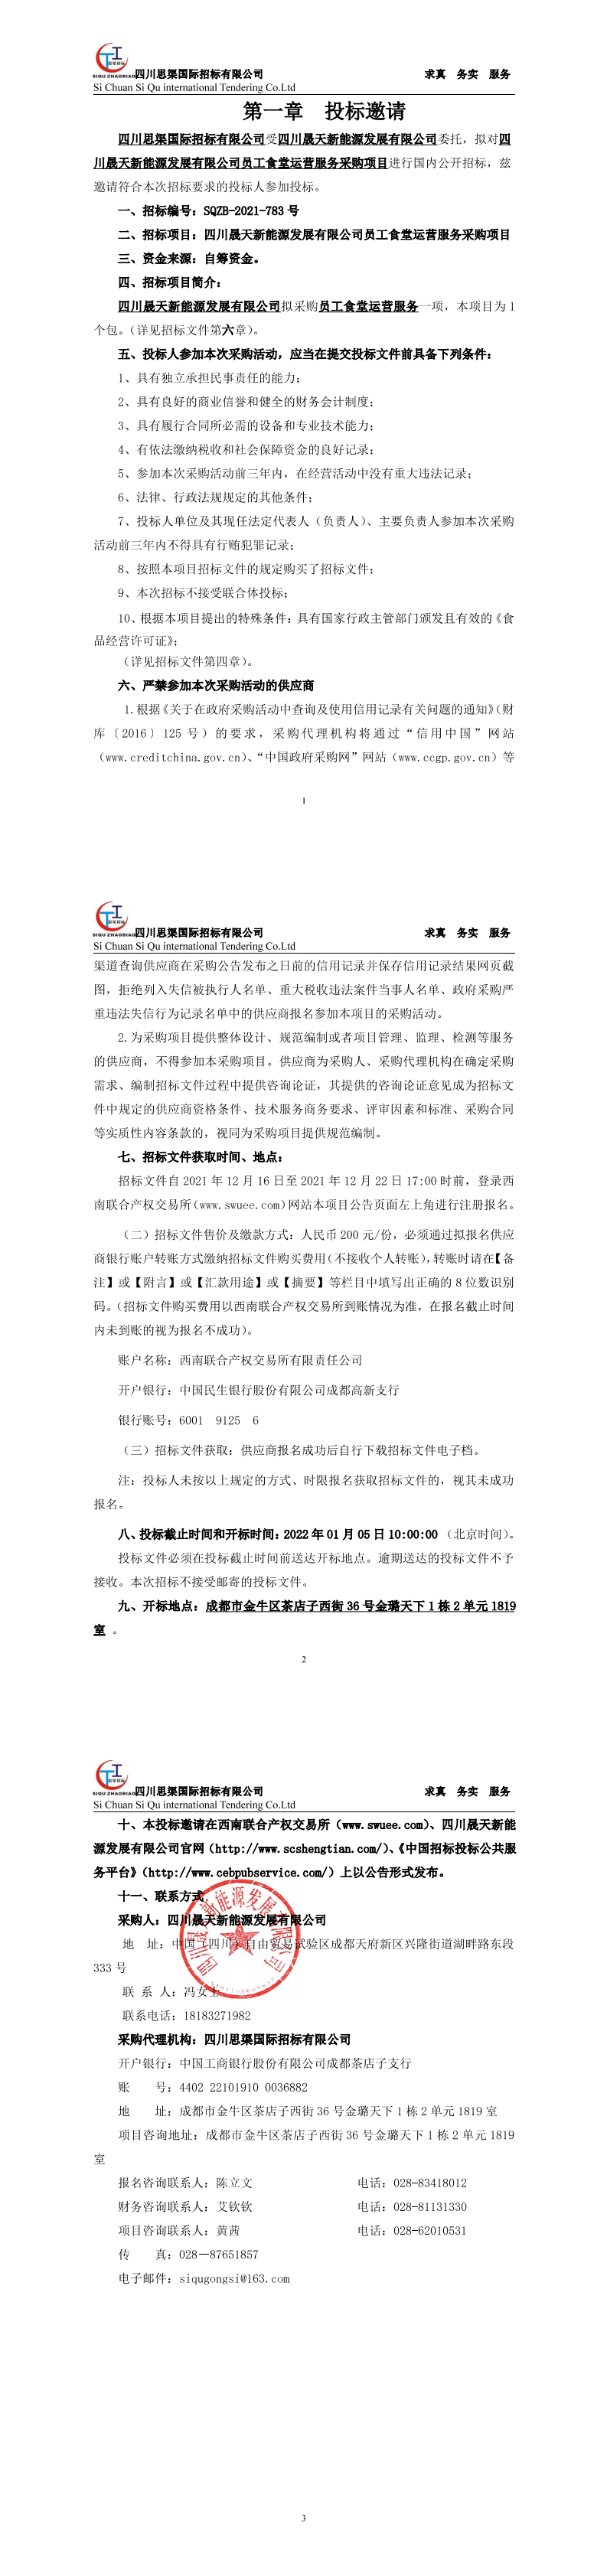 leyu乐鱼体育APP官方网站员工食堂运营服务采购项目招标公告_00.png